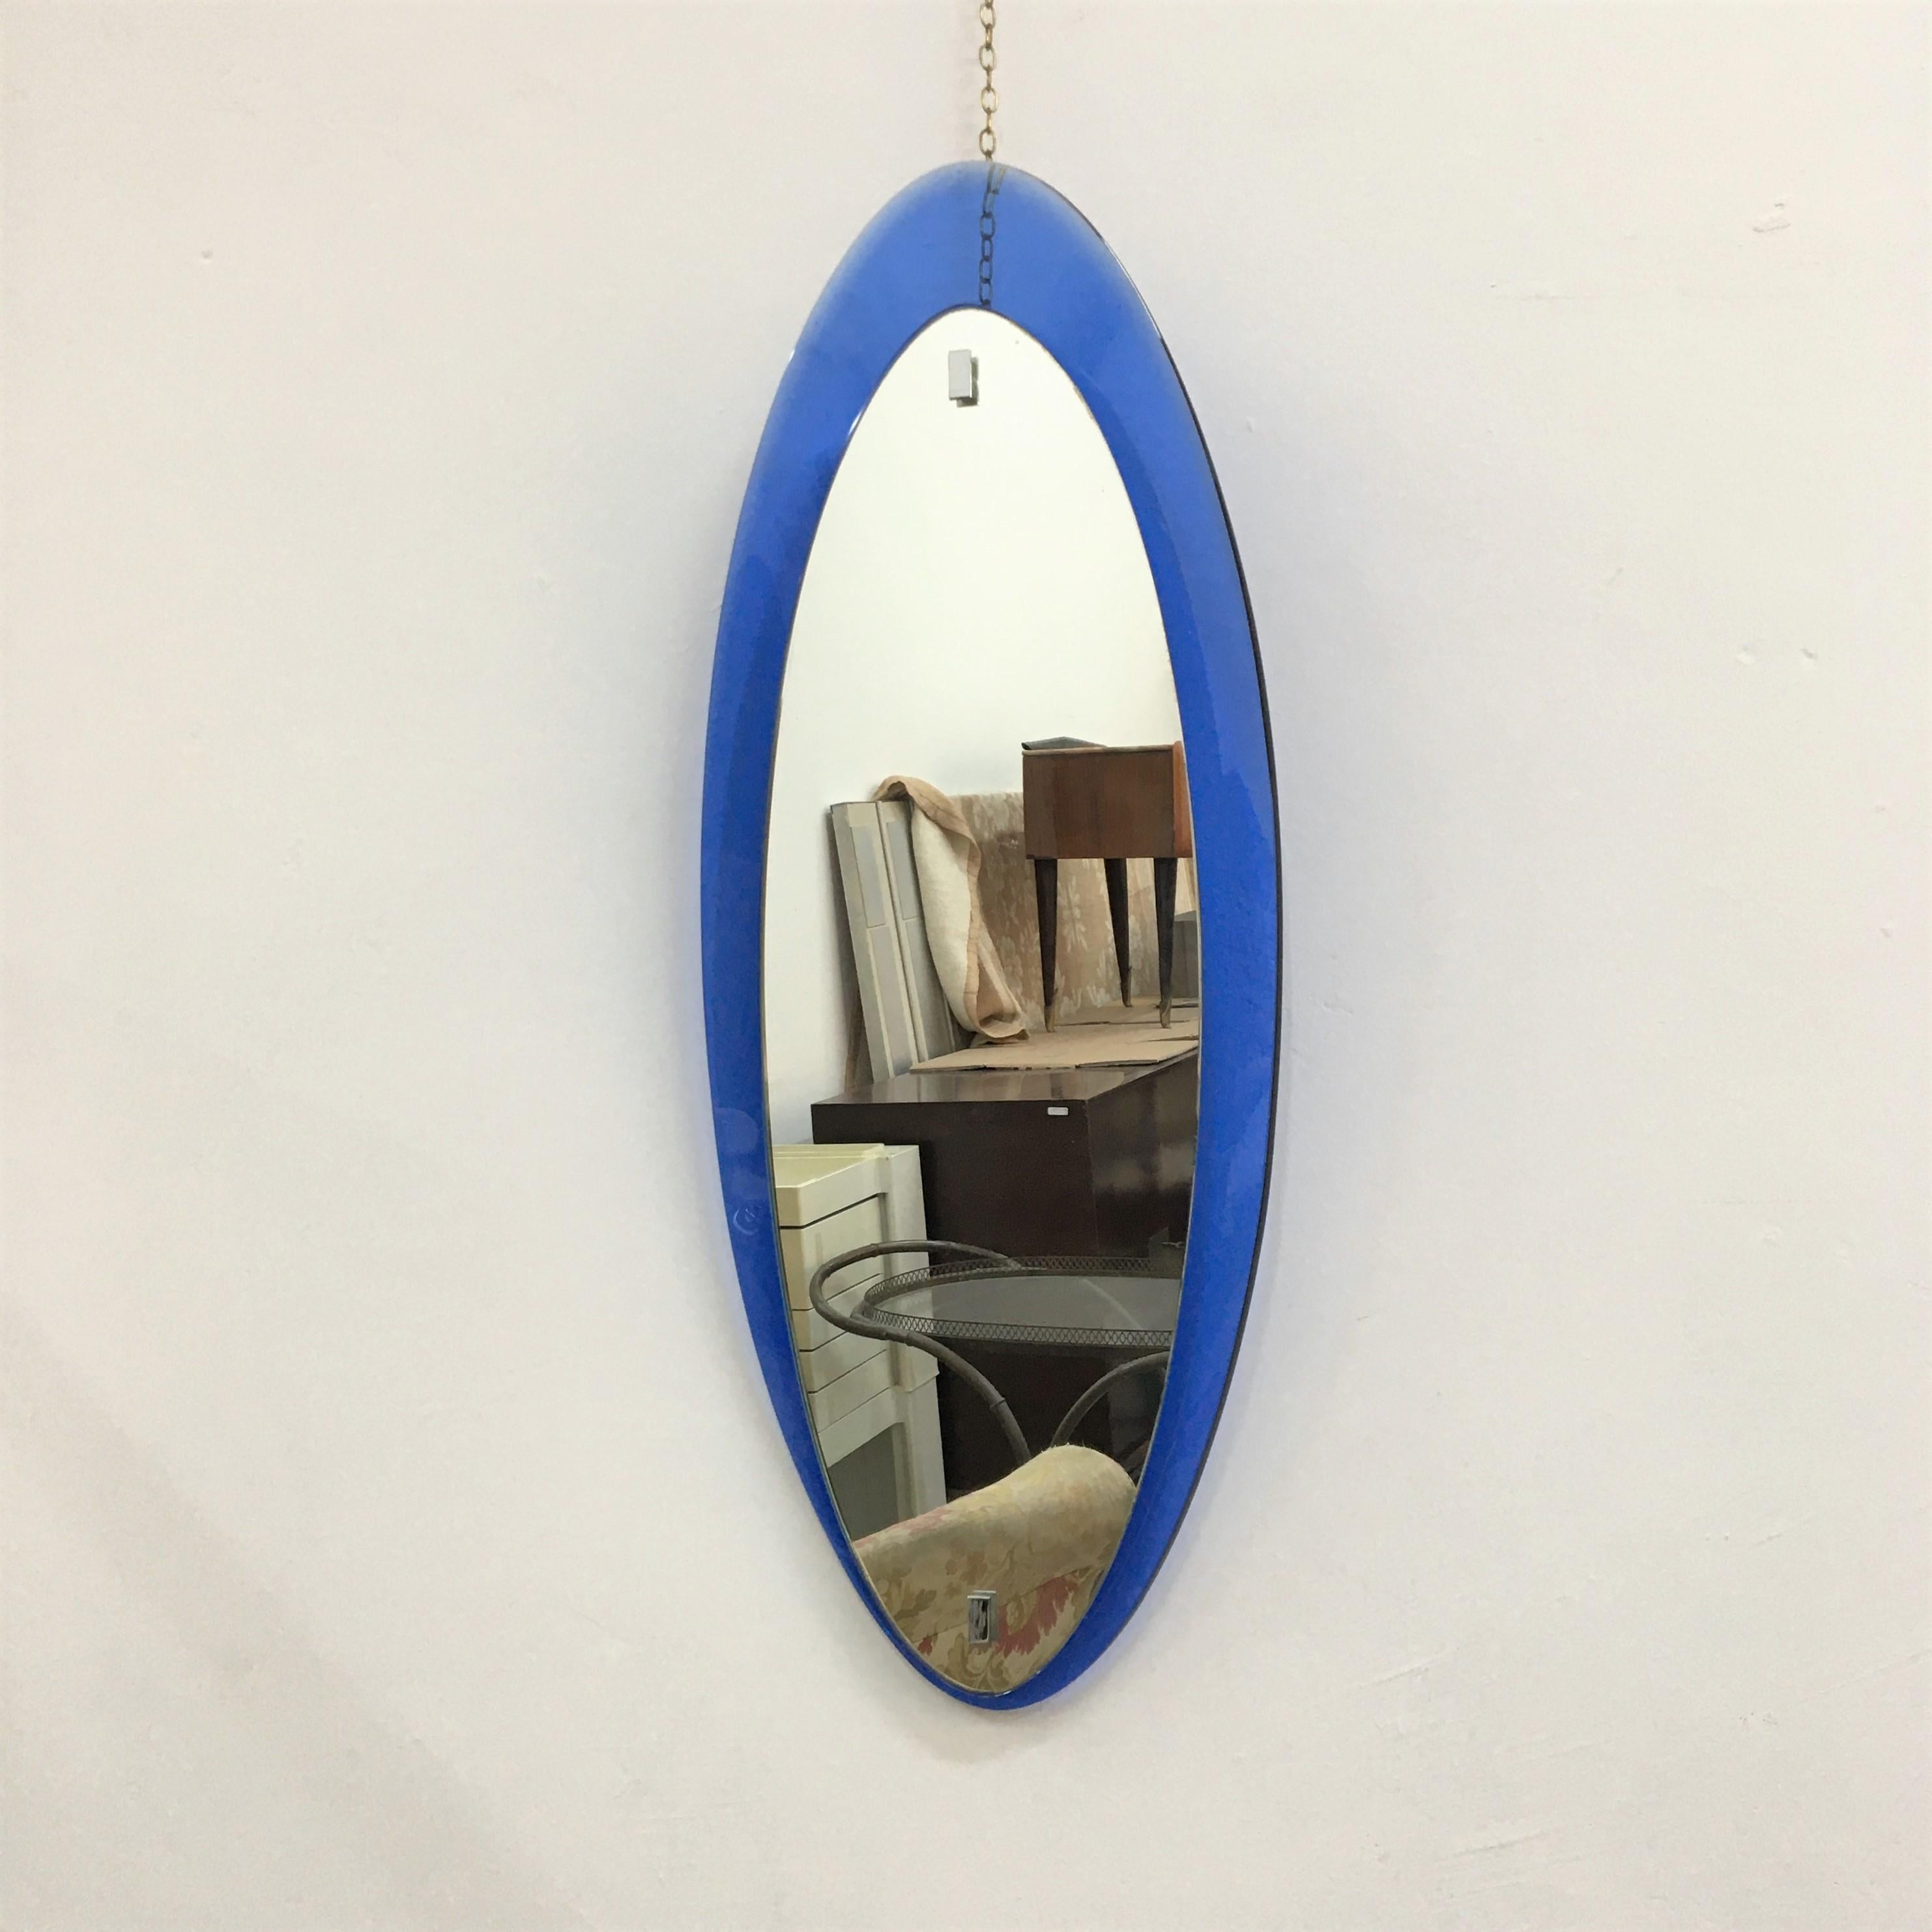 Schöner Spiegel im Stil von Fontana Arte, 1960er Jahre. Sie hat eine ganz besondere schmale ovale Form mit einem blauen Fontana-Rahmen.
Abnutzung im Einklang mit dem Alter und uns.